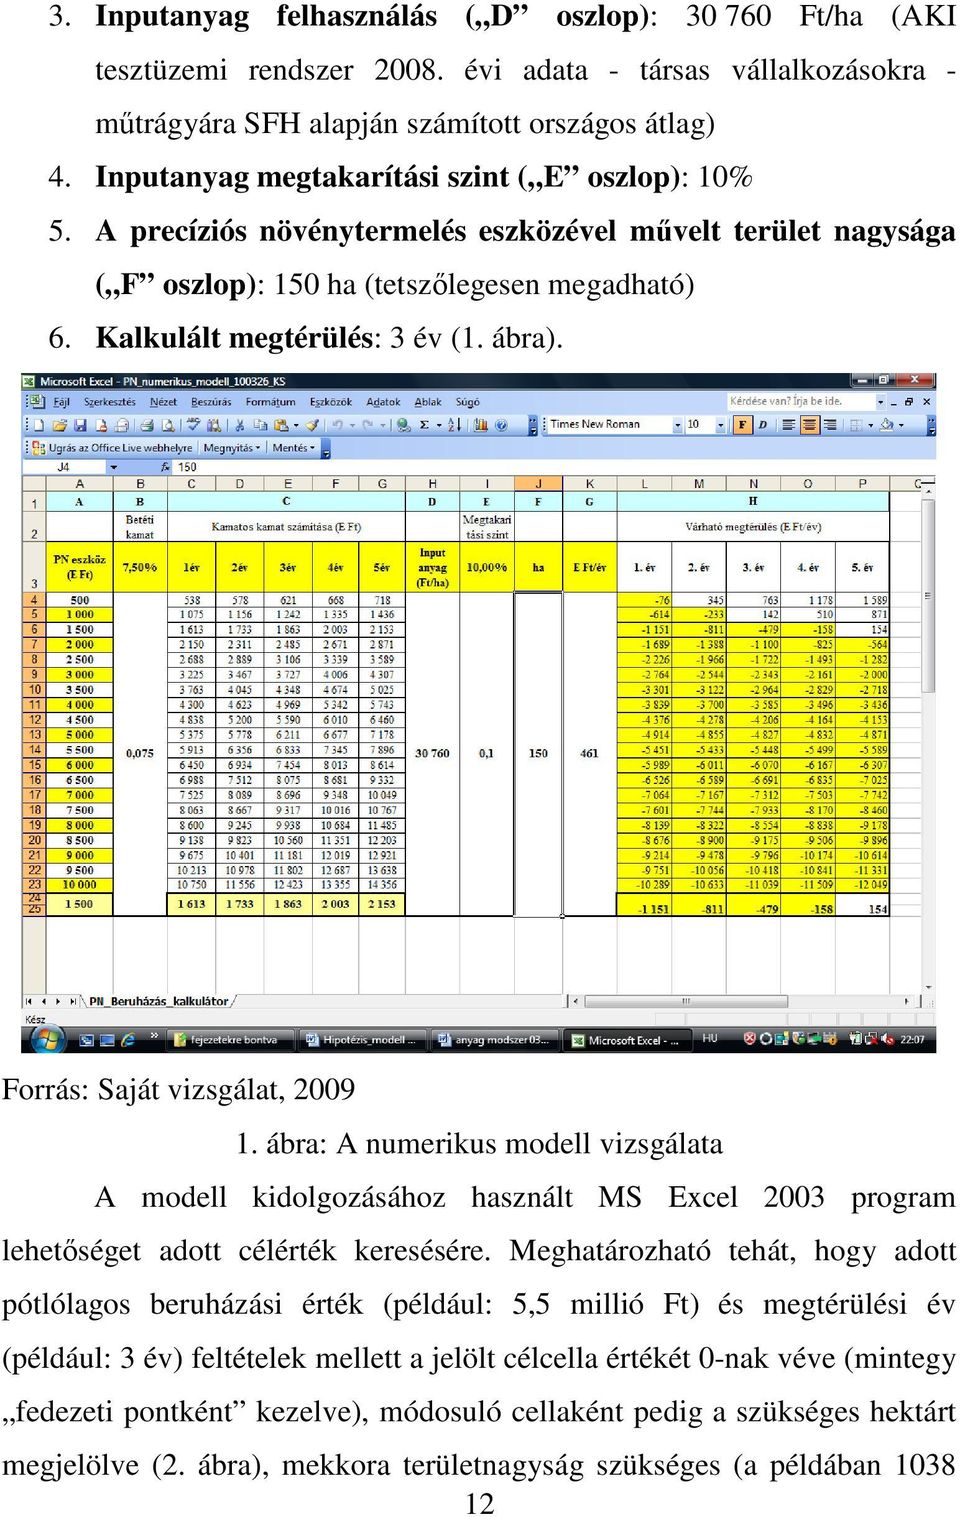 Forrás: Saját vizsgálat, 2009 1. ábra: A numerikus modell vizsgálata A modell kidolgozásához használt MS Excel 2003 program lehetıséget adott célérték keresésére.